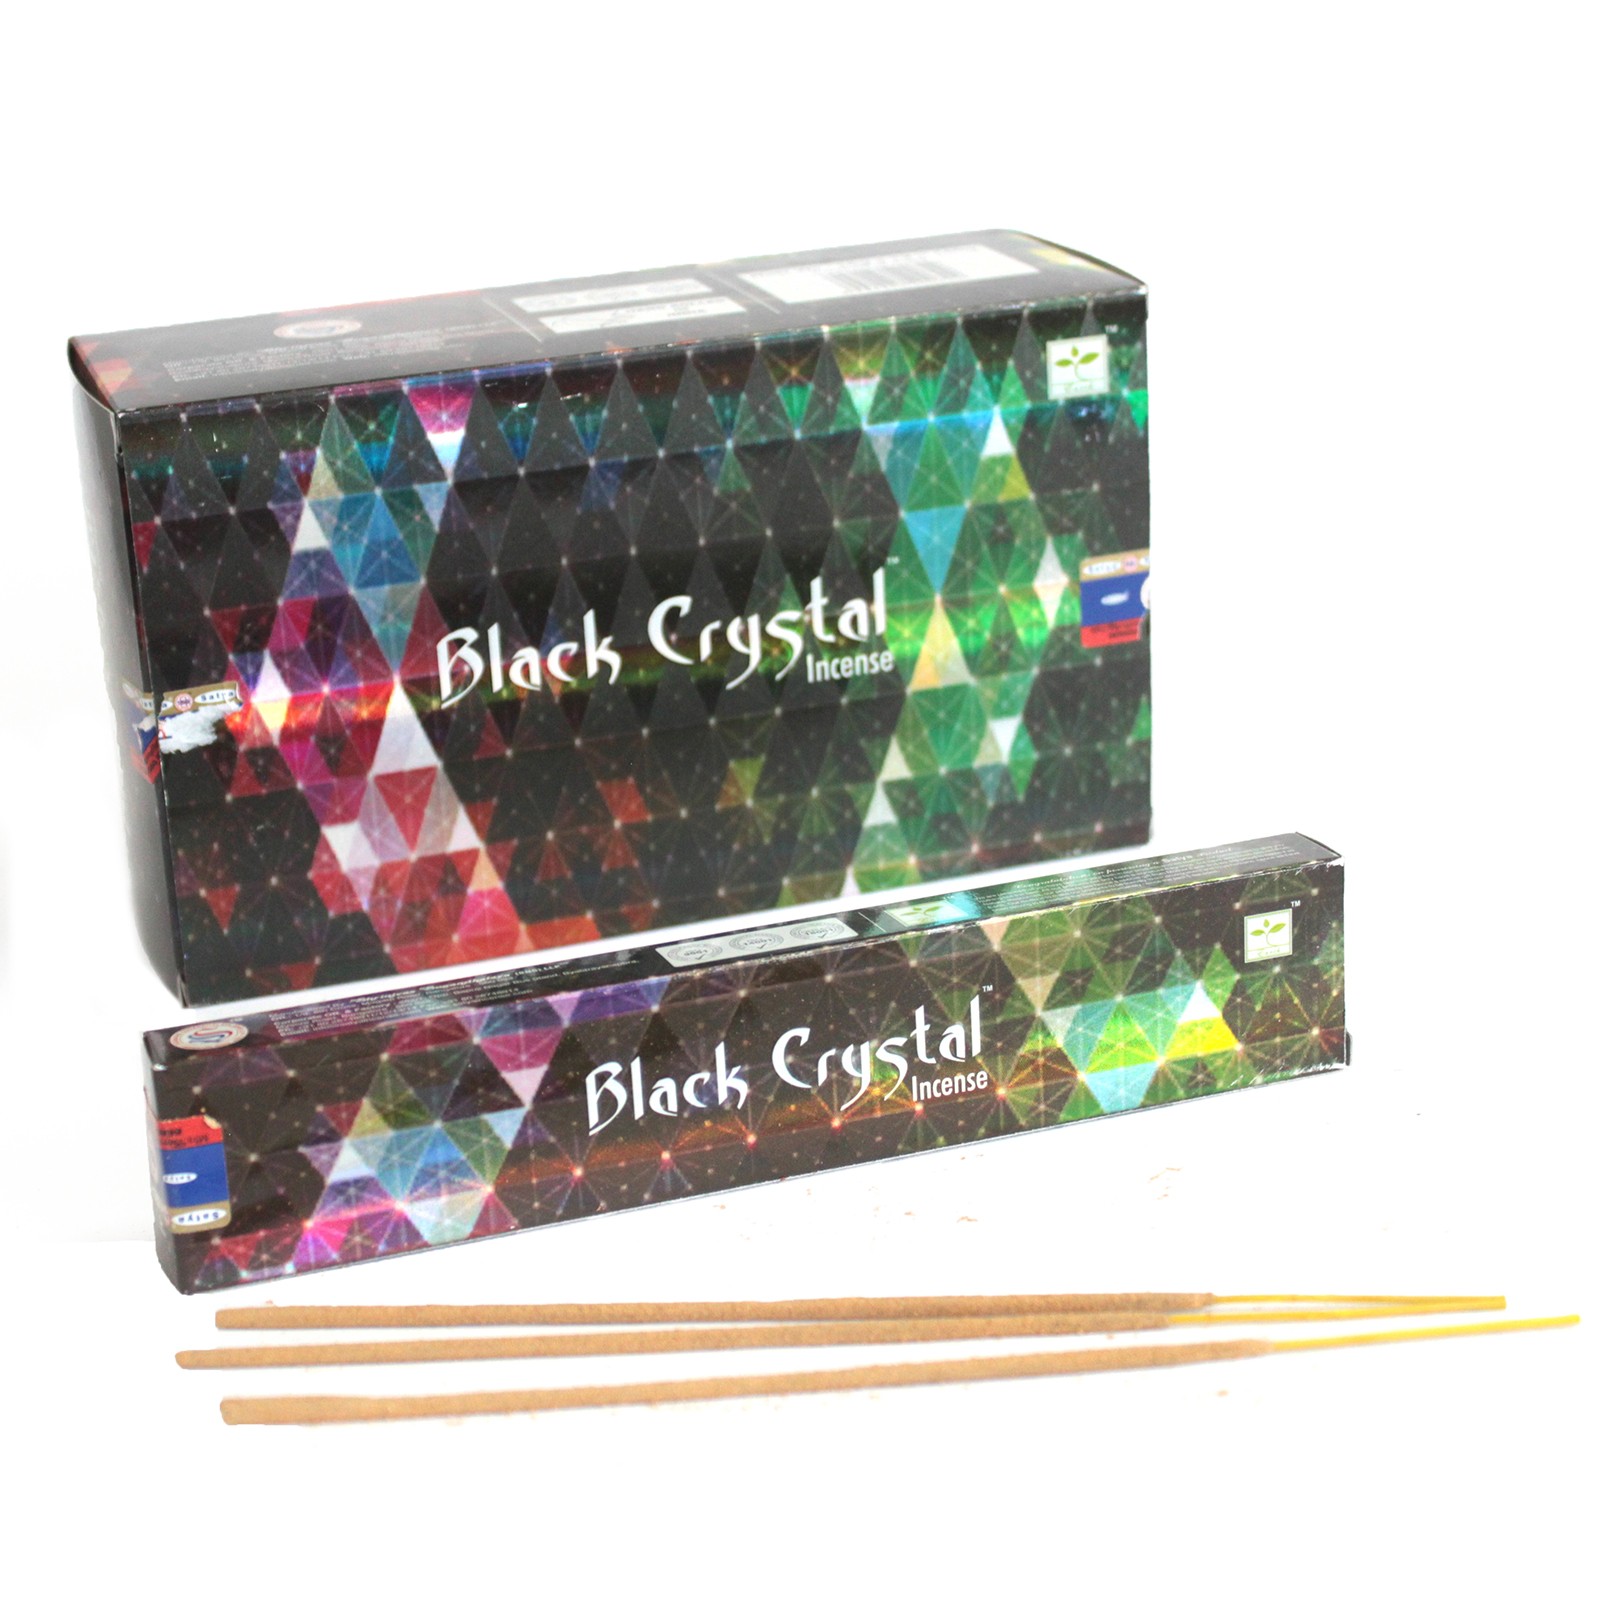 2 x Satya Black Crystal Incense - 15g Pack